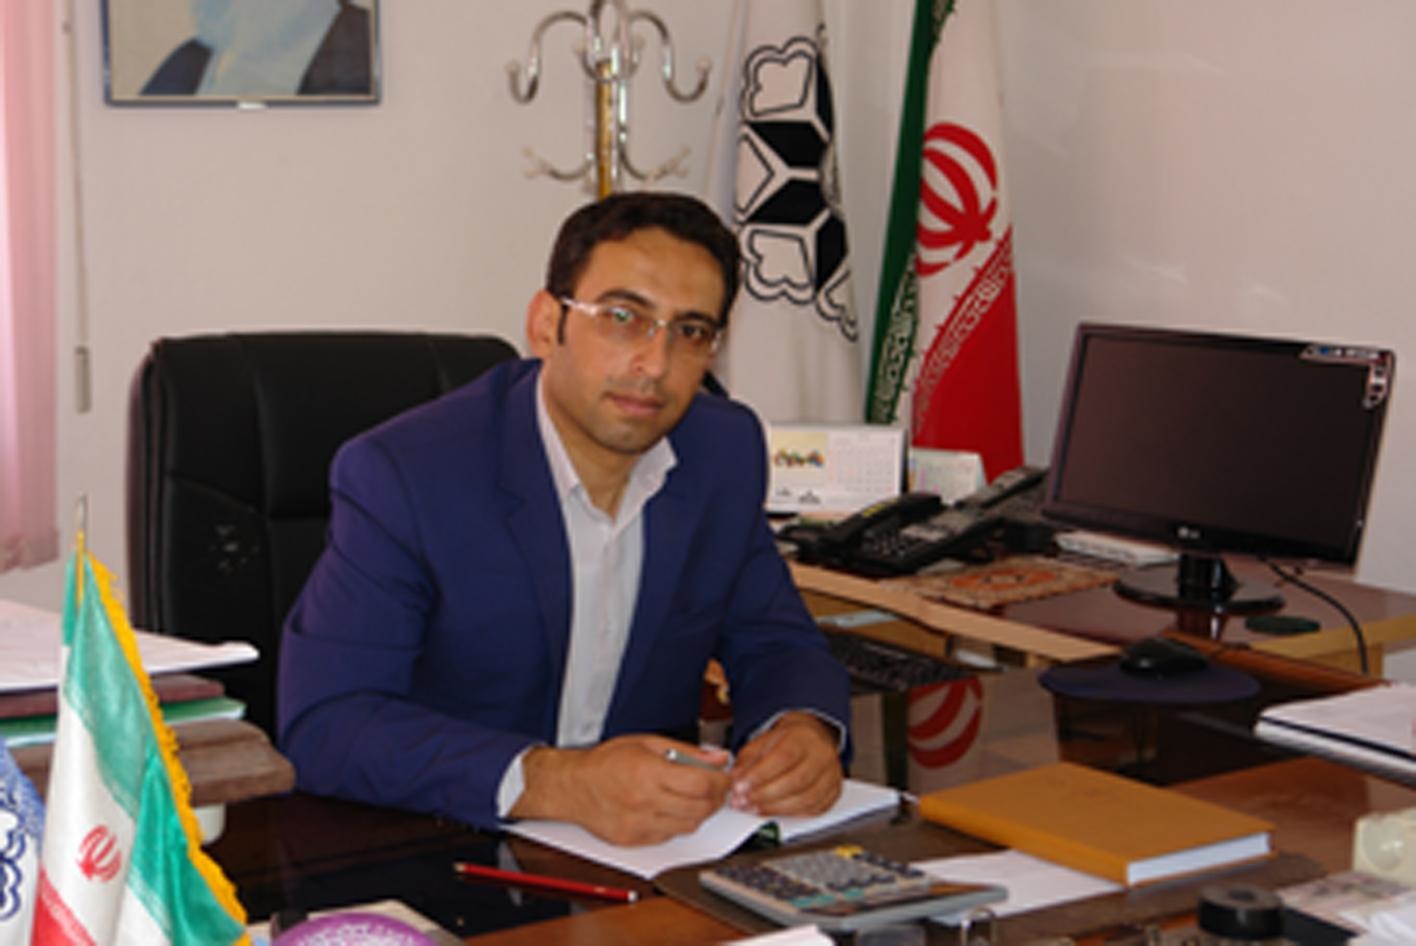 عضو شورای شهر چورزق : چورزق ظرفیت های بالقوه ای در بخش توریسمی دارد -  خبرآنلاین